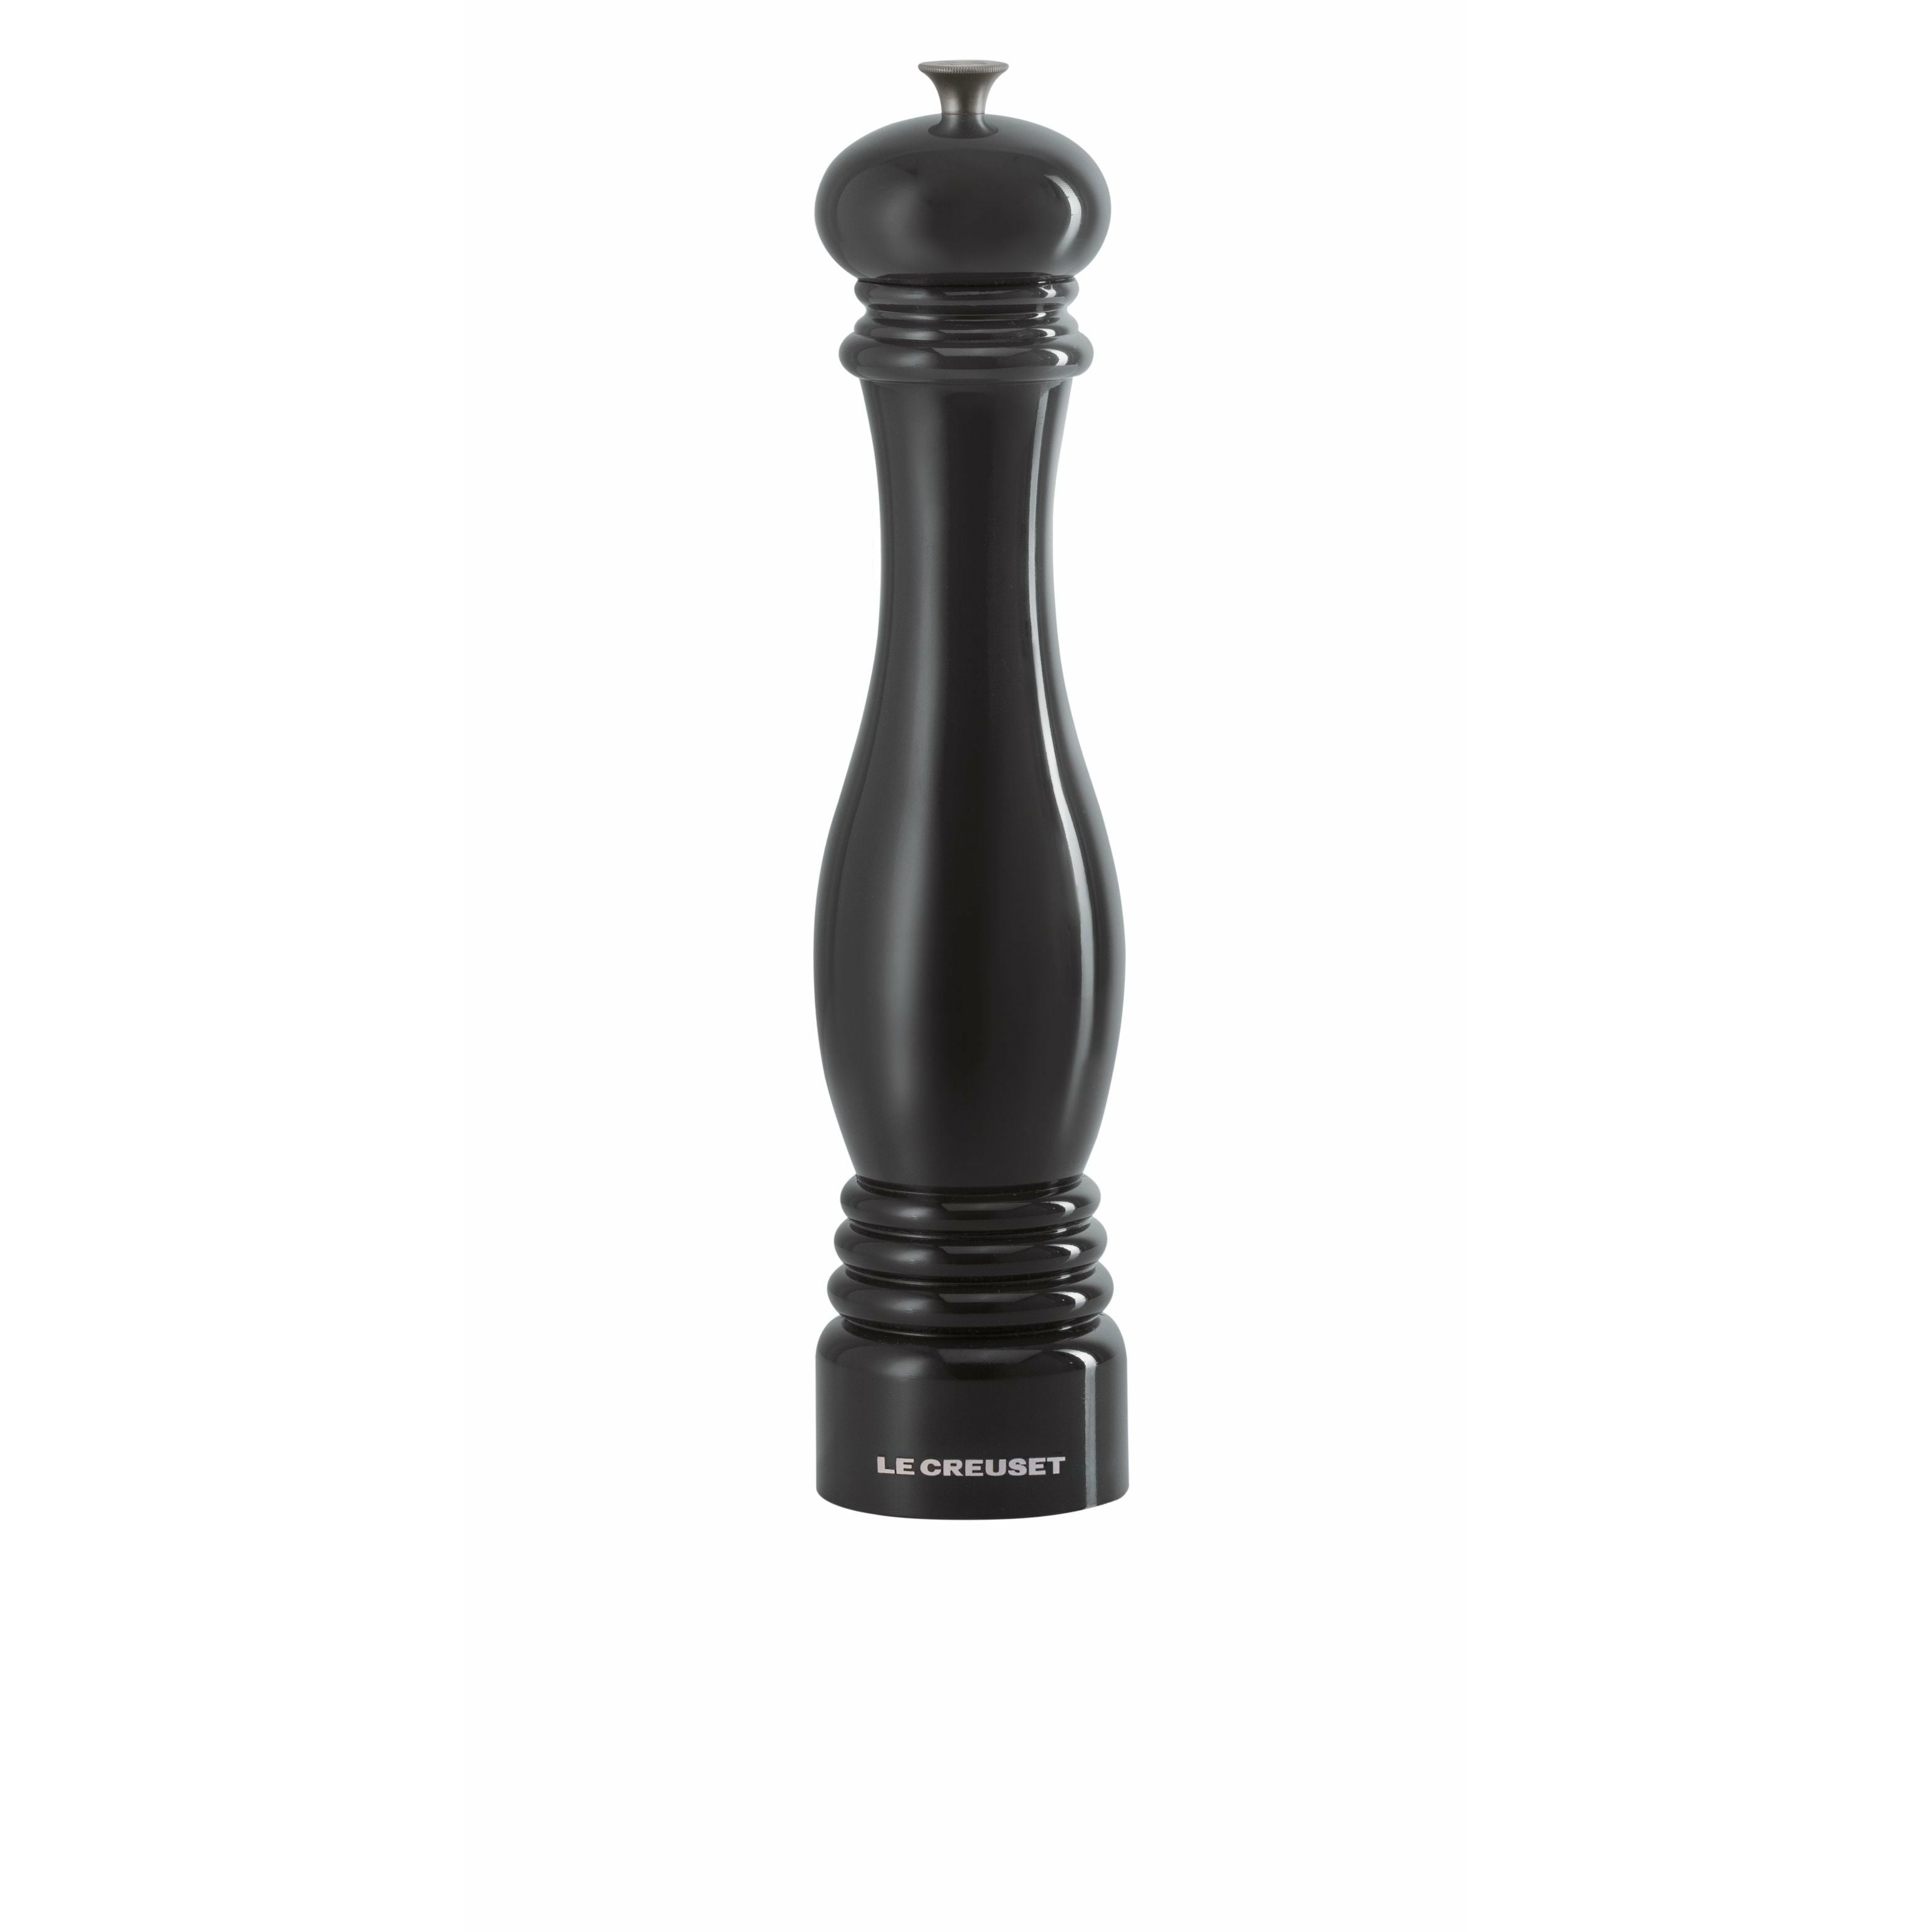 Le Creuset Pepparkvarn 30 cm, glansig svart